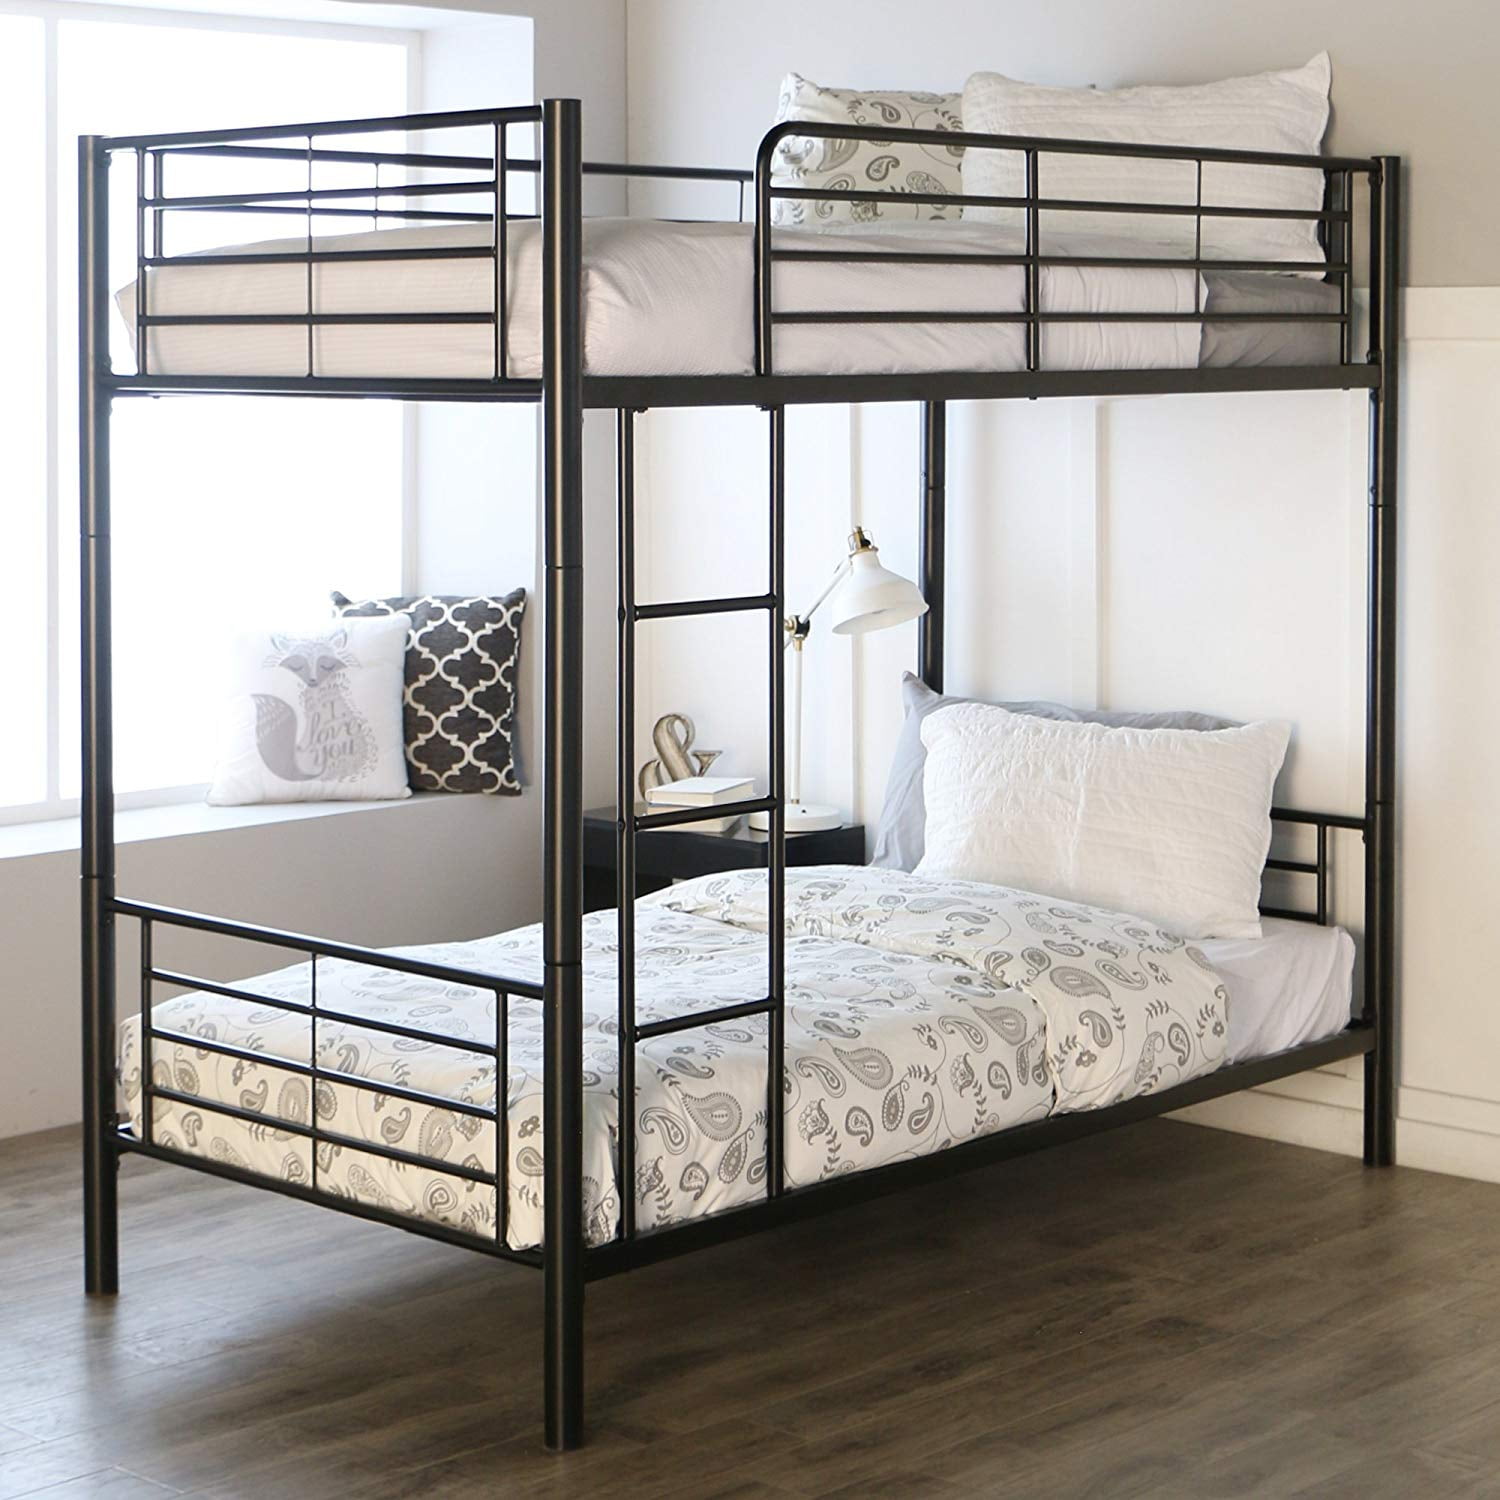 Metal Twin over Bunk Beds Frame Ladder Bedroom Dorm for Children Adult Gray 